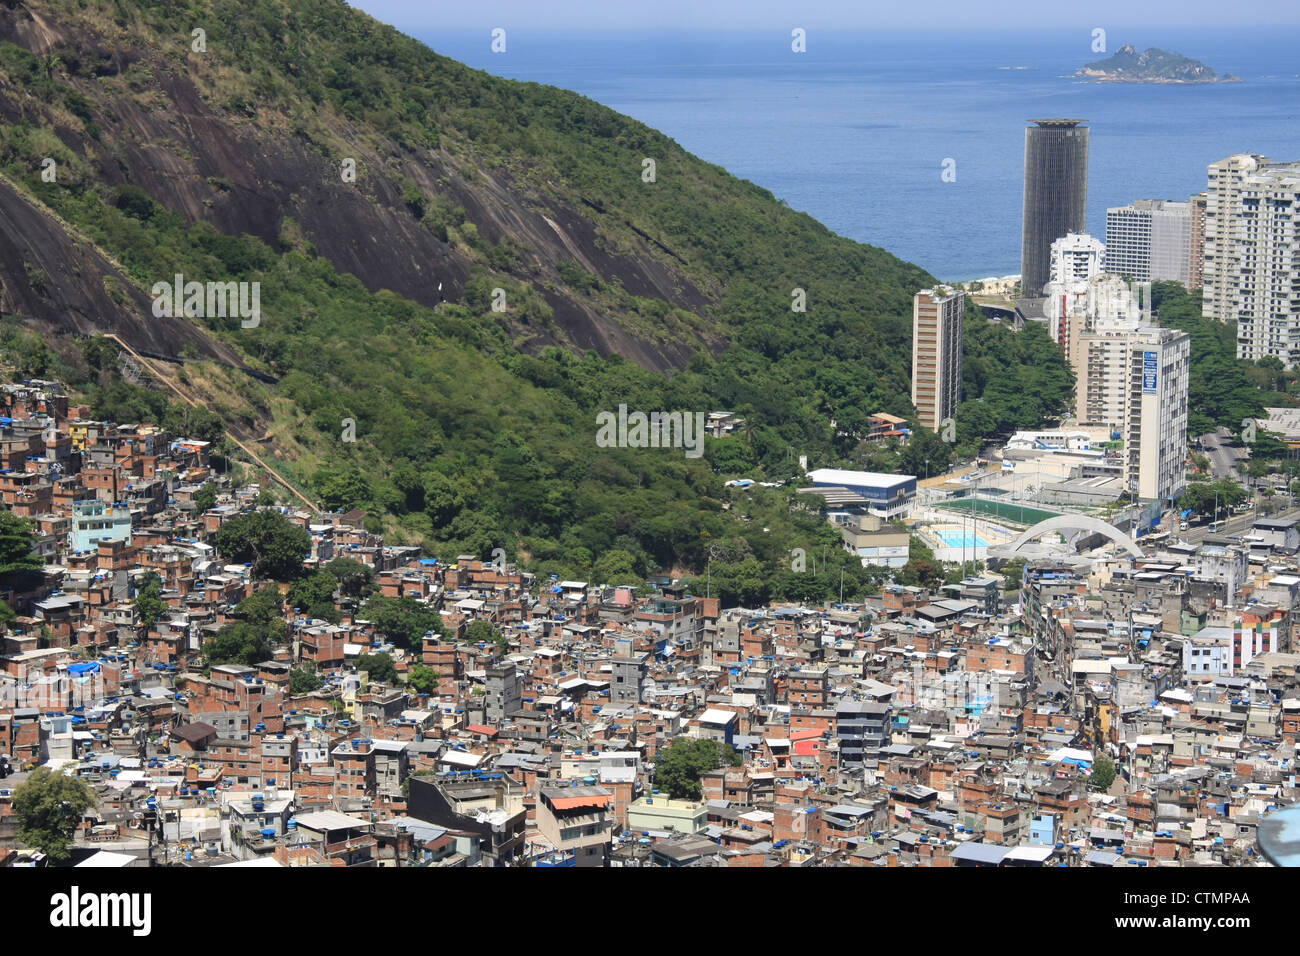 Favela da Rocinha, Rio de Janeiro, Brazil Stock Photo